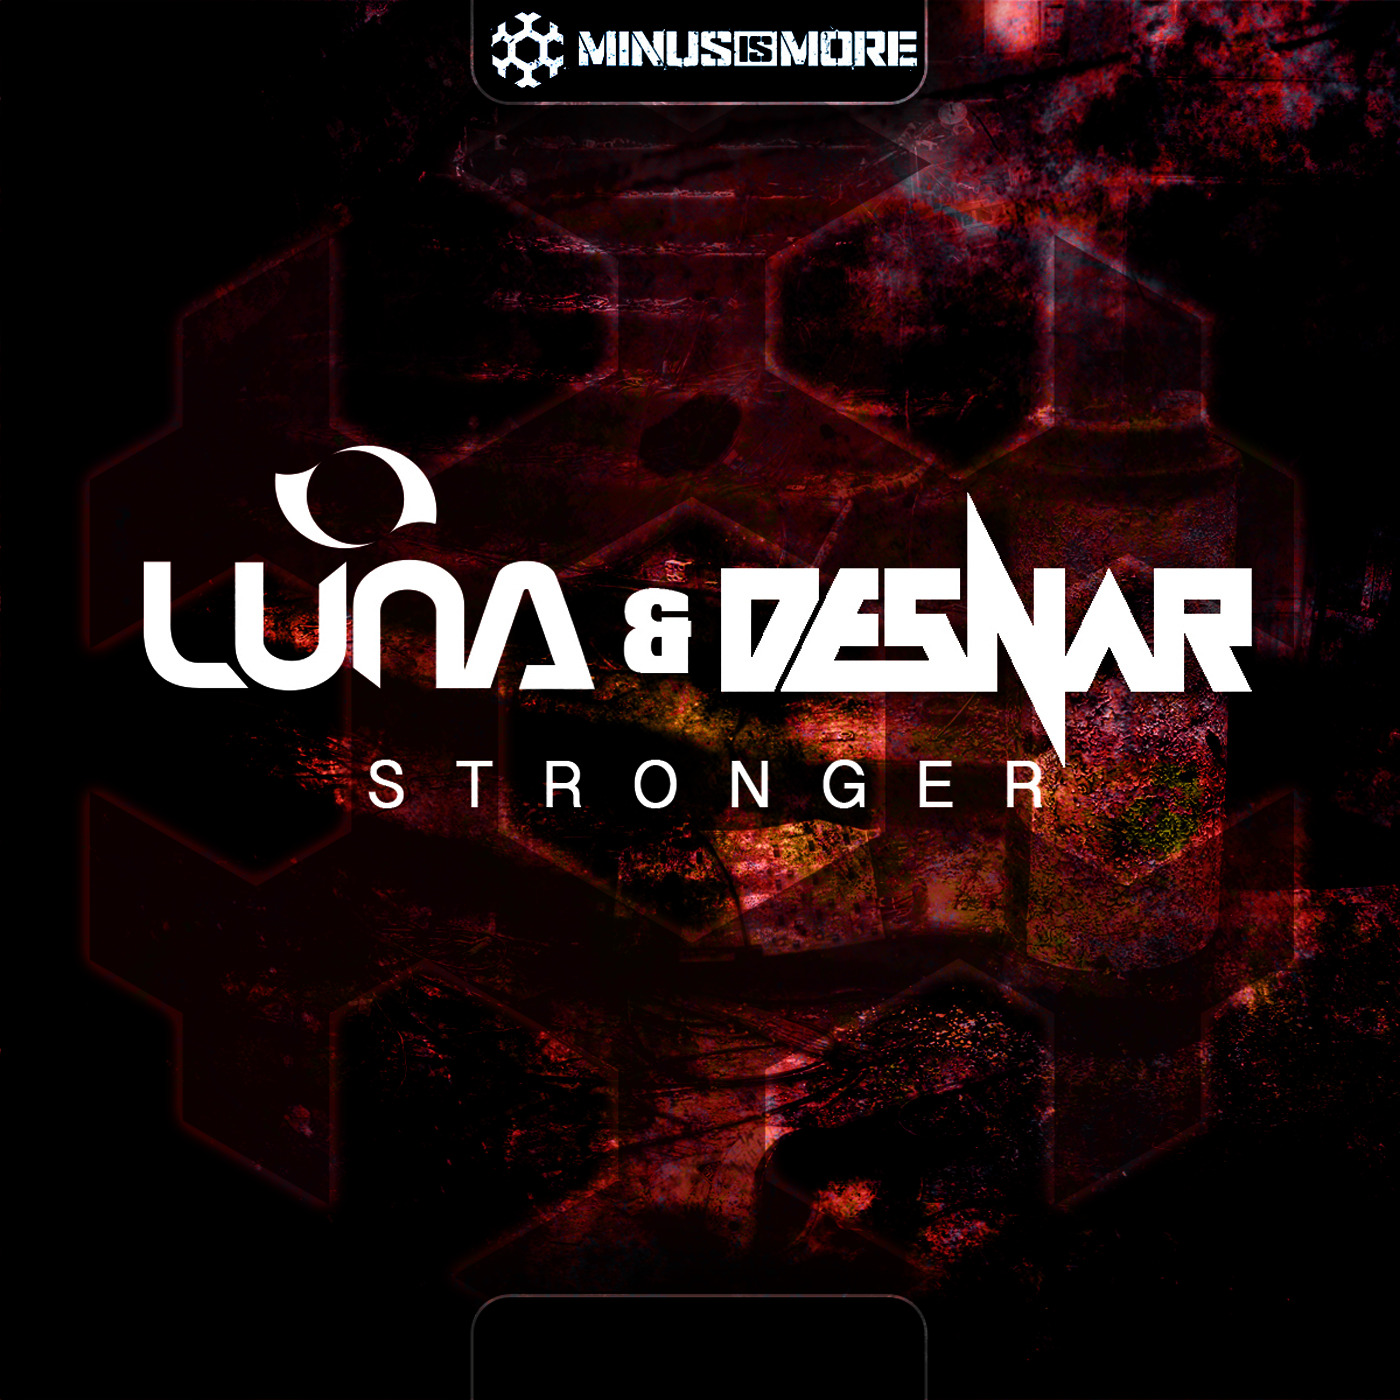 Luna & Desnar - Stronger [MINUS IS MORE] MIM022